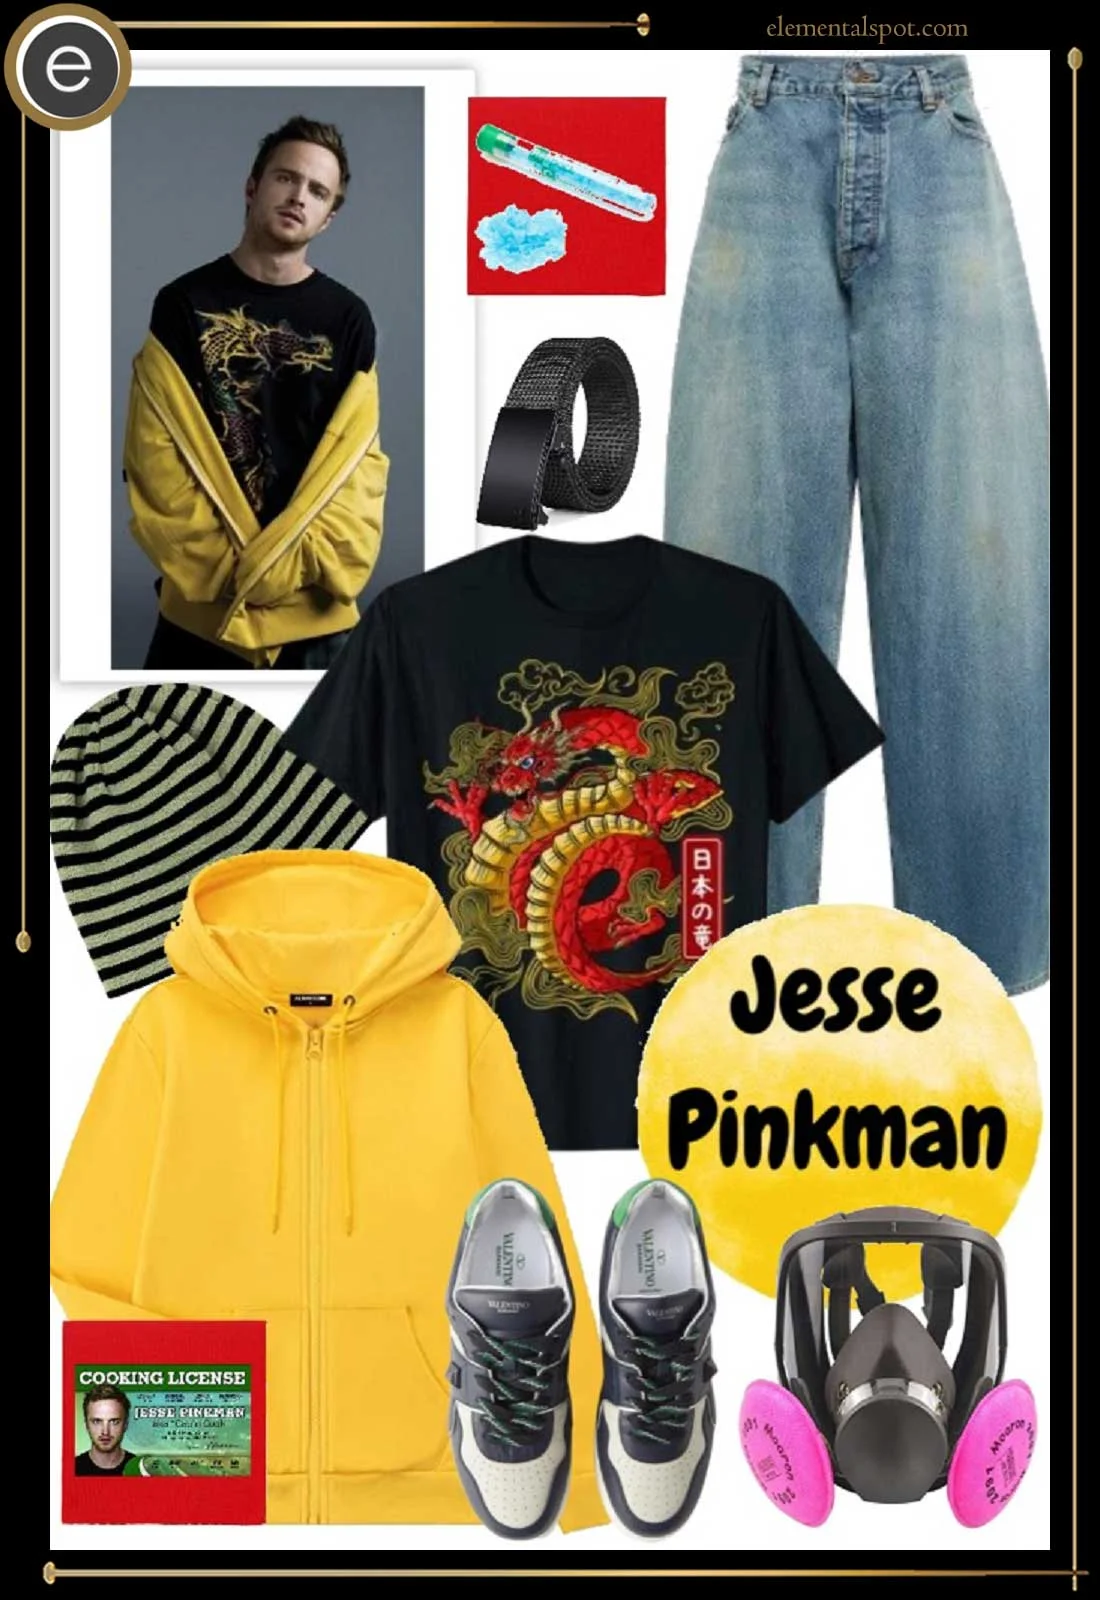 Dress Up Like Jesse Pinkman from Breaking Bad - Elemental Spot